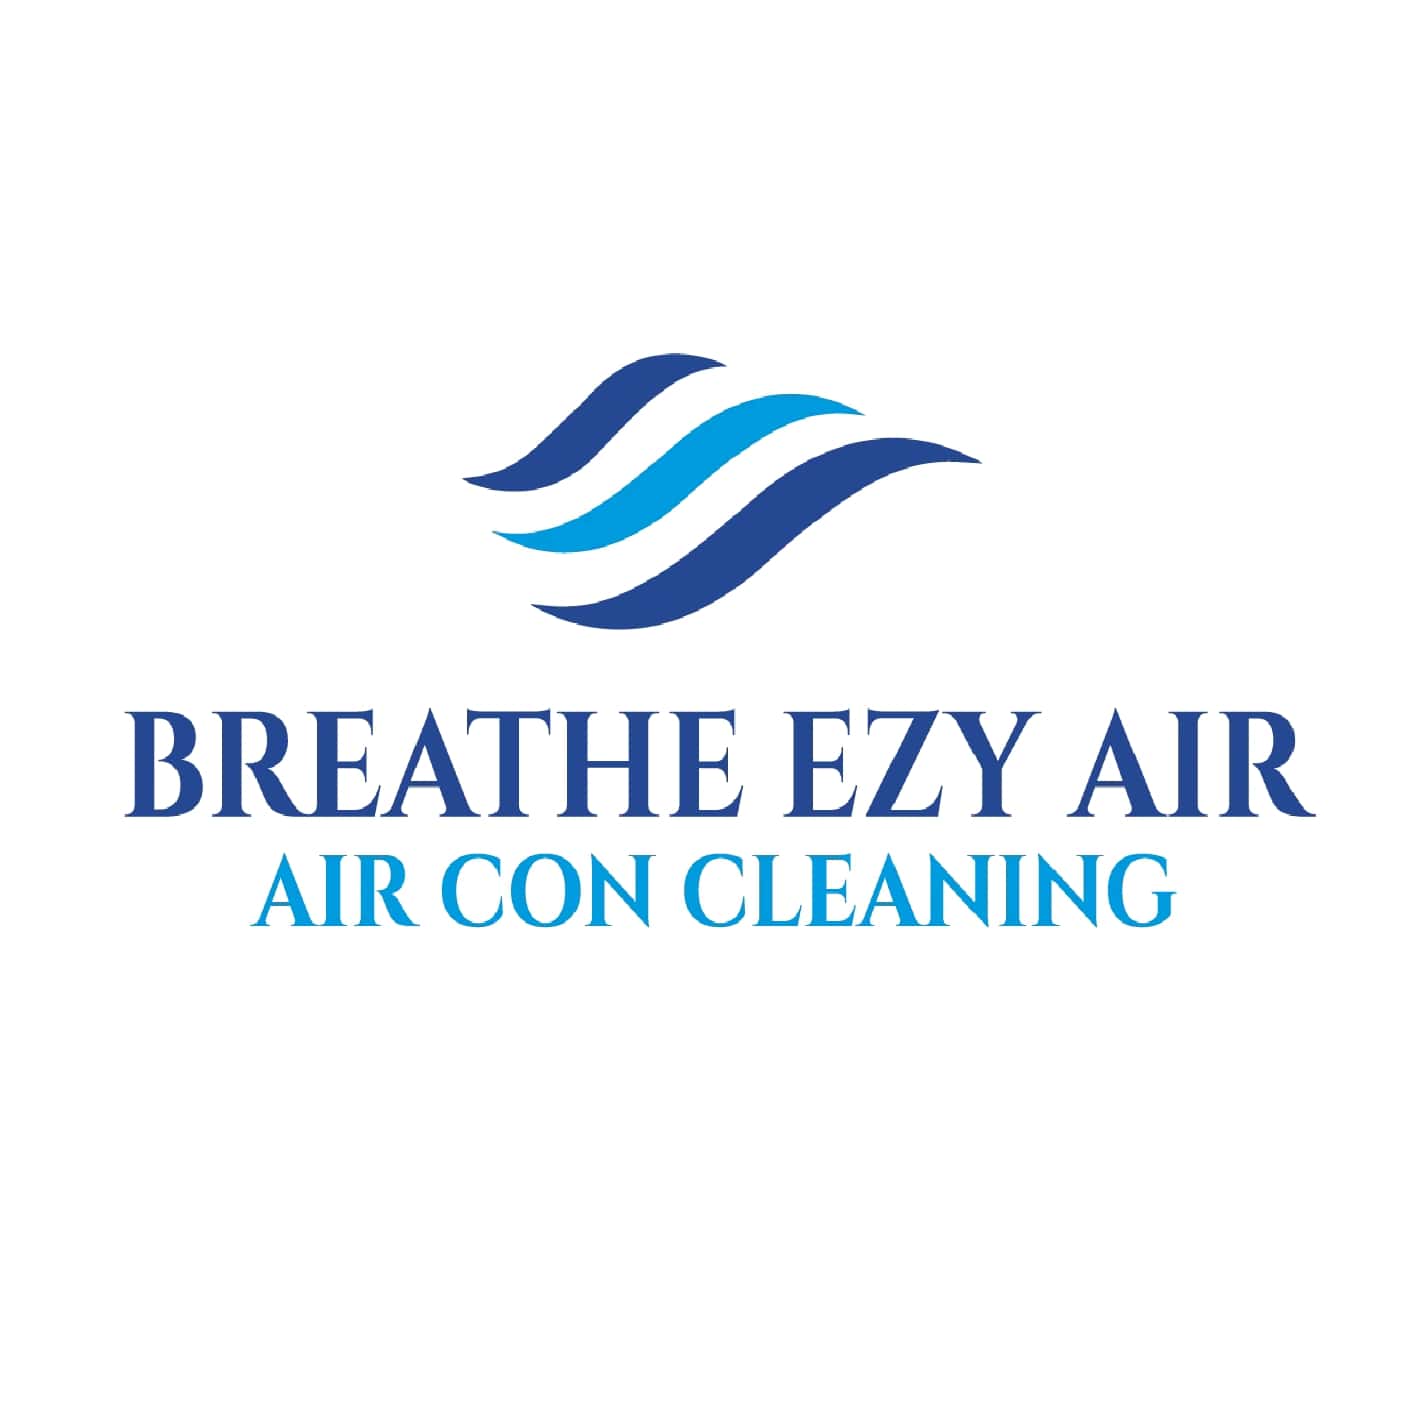 Breathezyair